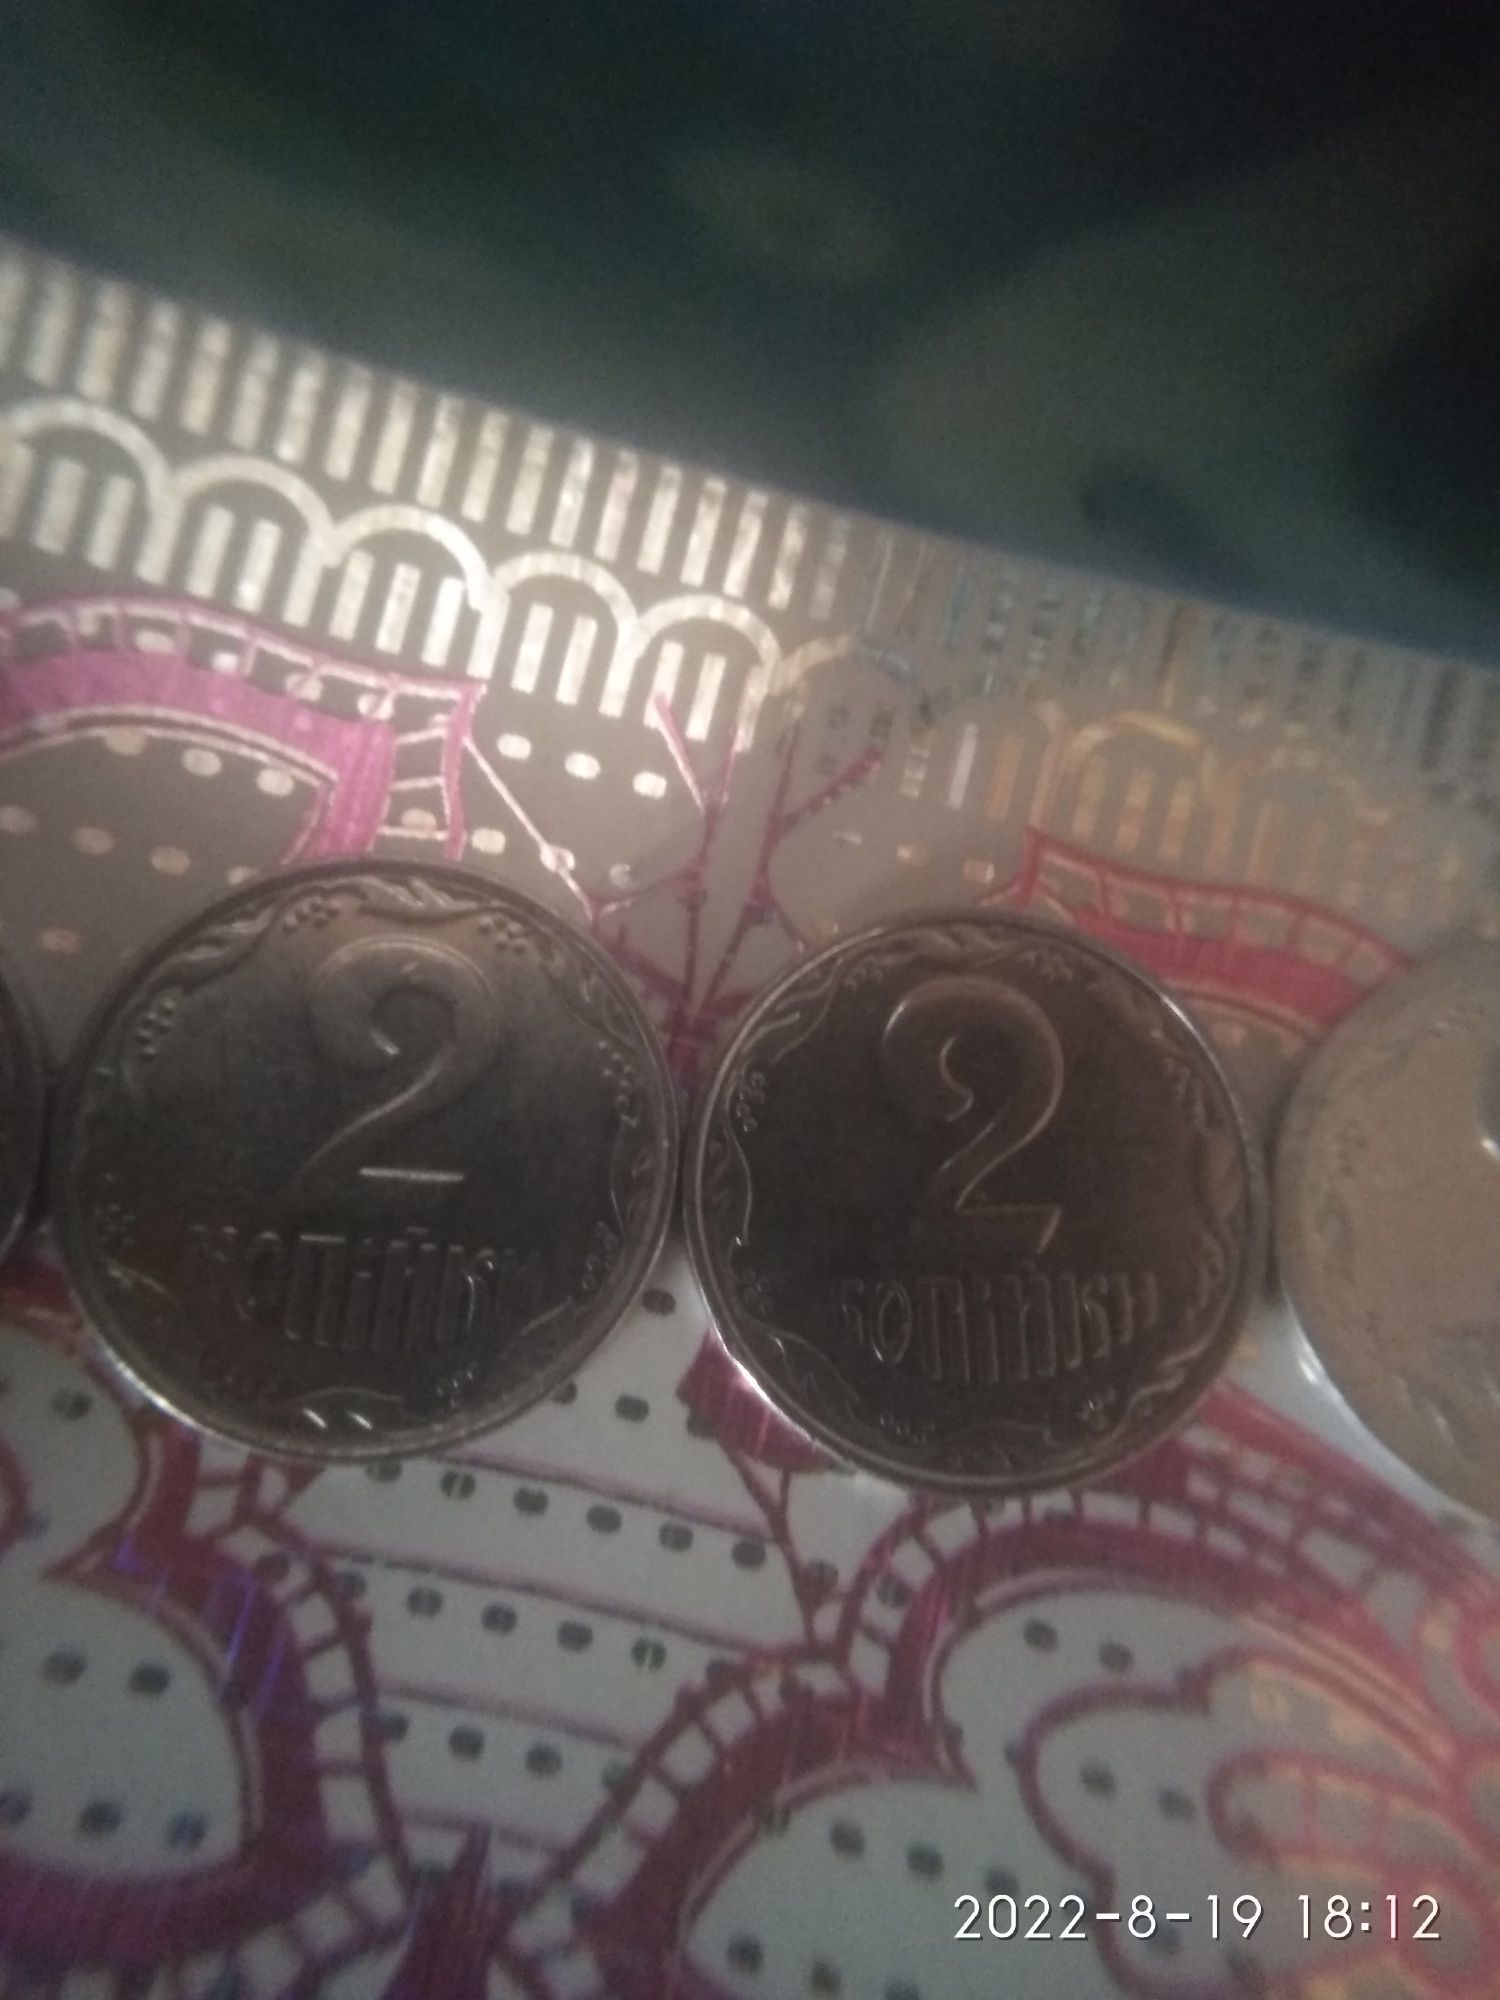 Продам монеты Украины